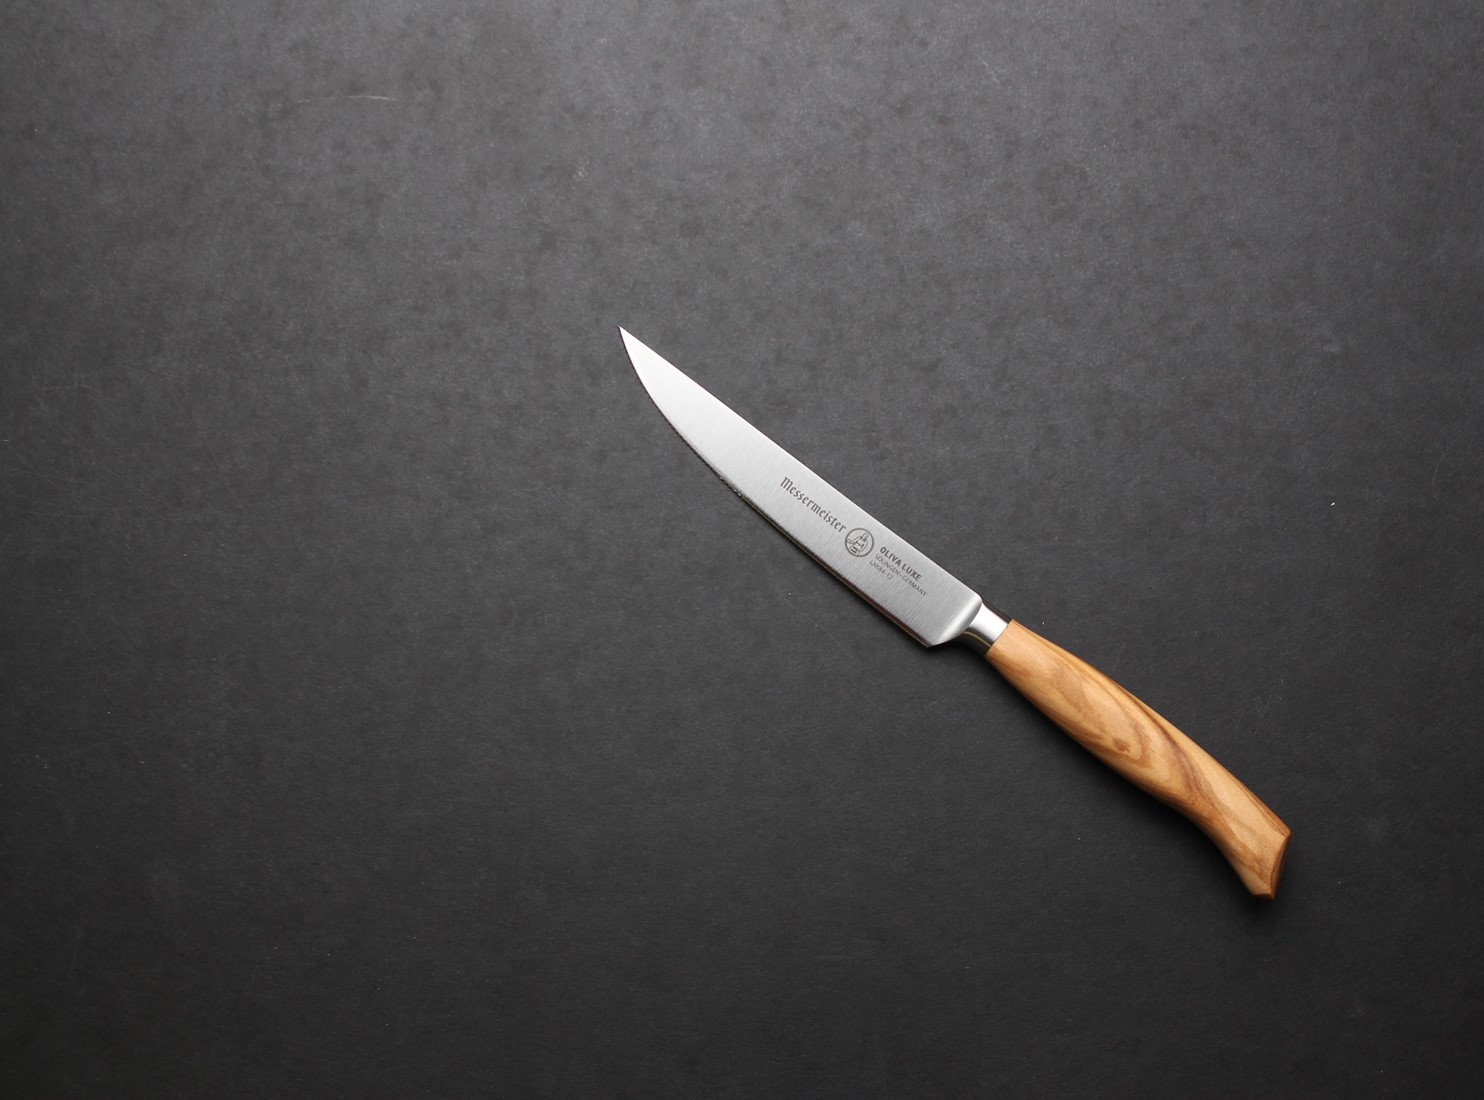 Oliva Luxe 5 inch Steak knife Messermeister